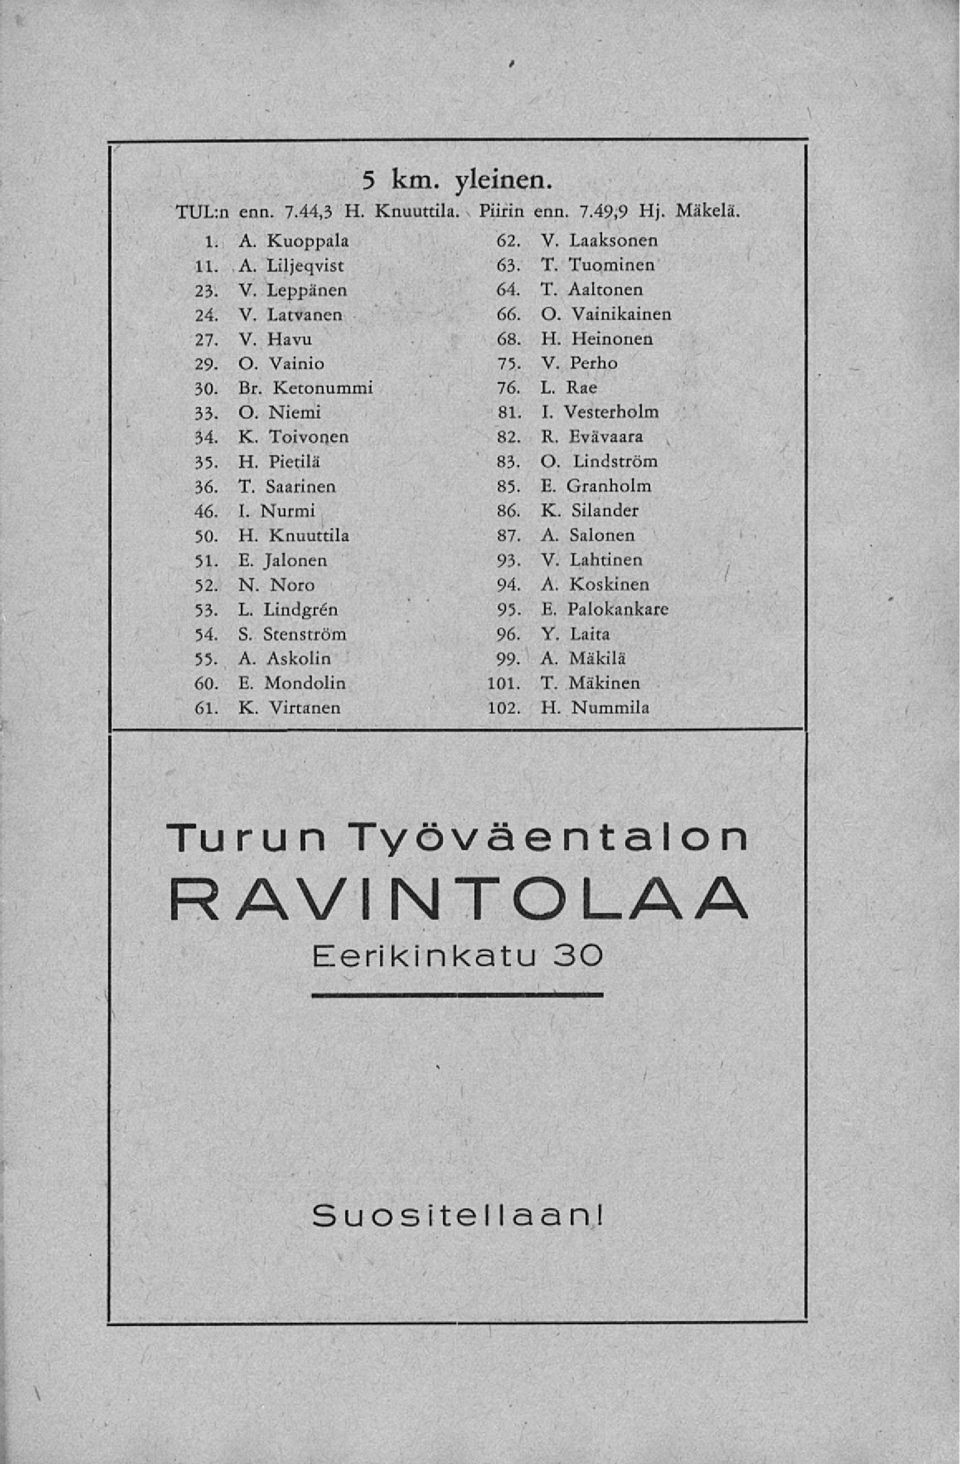 T Tuominen 64. T. Aaltonen 66. O. Vainikainen 68. H. Heinonen 75. V. Perho 76. L. Rae 81. I. Vesterholm 82. R. Evävaara 83. O. Lindström 85. E. Granholm 86. K. Silander 87. A. Salonen 93. V. Lahtinen 94.